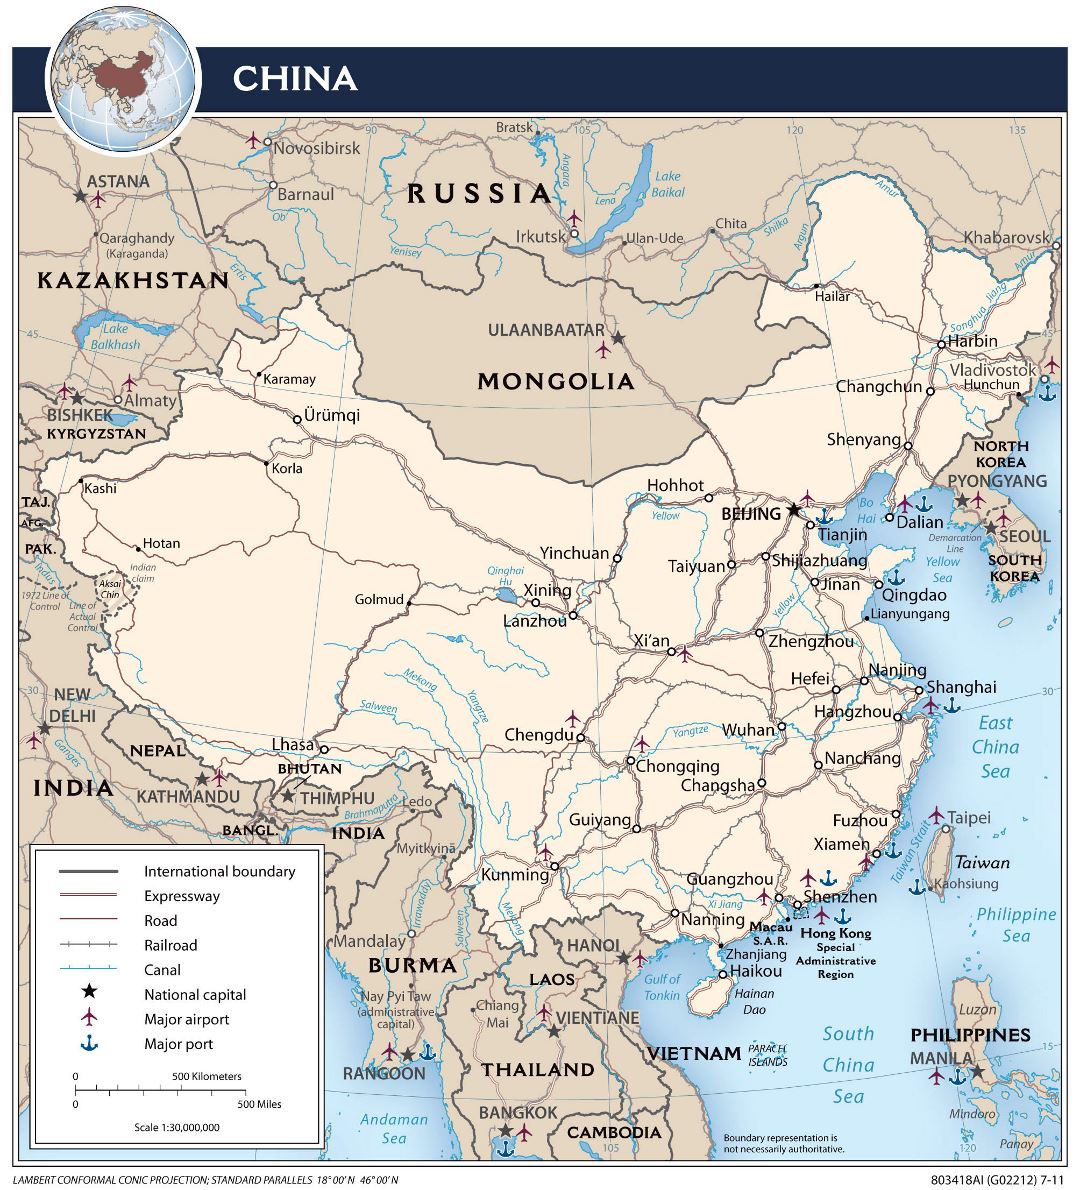 Grande detallado mapa político de China con carreteras, ferrocarriles, principales ciudades, puertos, aeropuertos y otras marcas - 2011